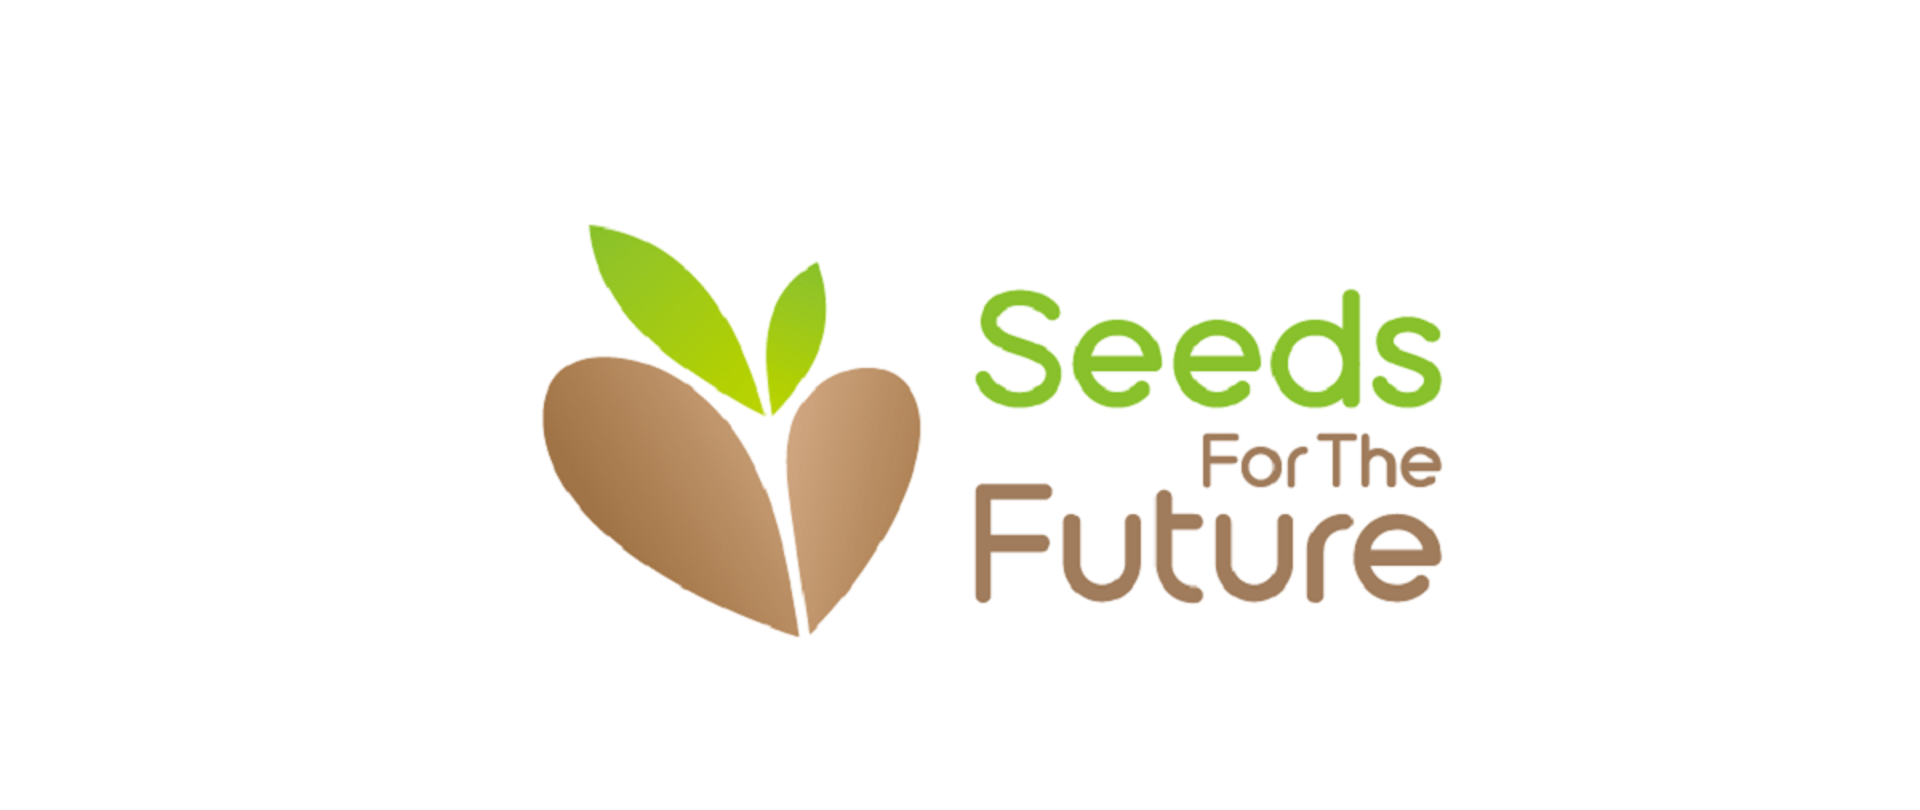 Na białym tle po lewo ikonka nasiona. Po prawo Zielony napis Seeds, poniżej niebieski napis For The Future